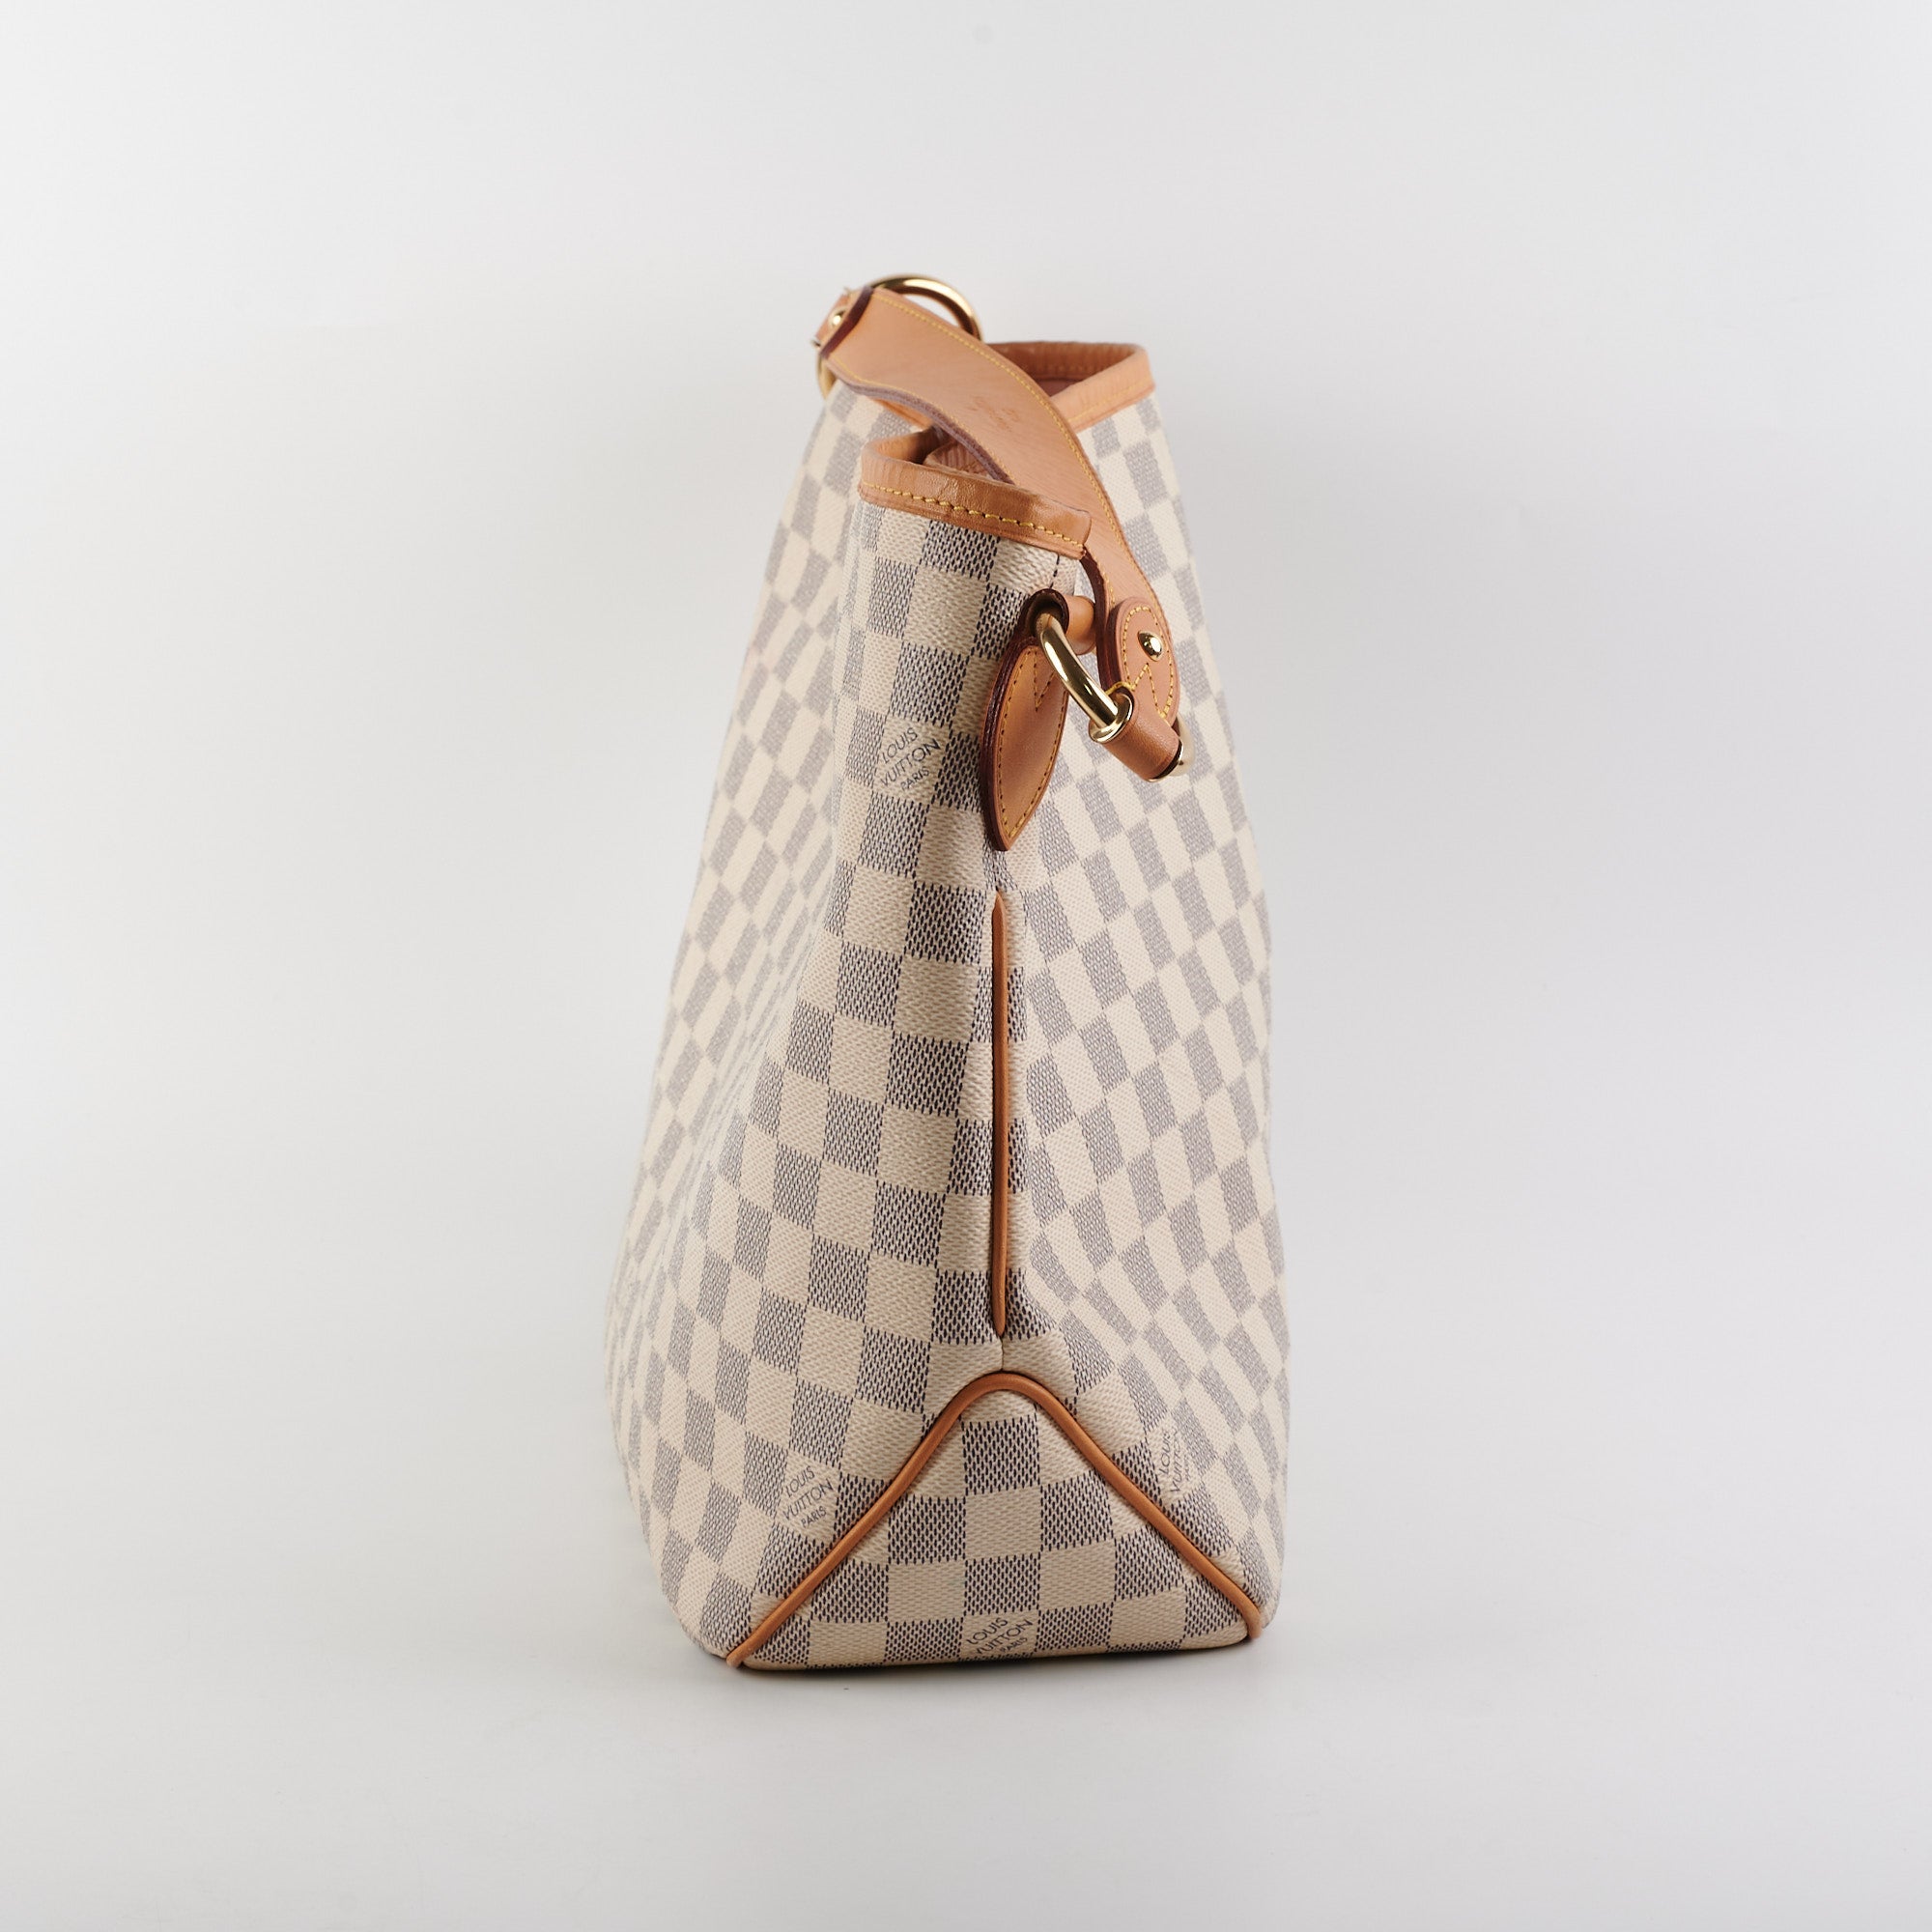 Louis Vuitton Delightful PM Damier Azur Bag - Đức An Phát